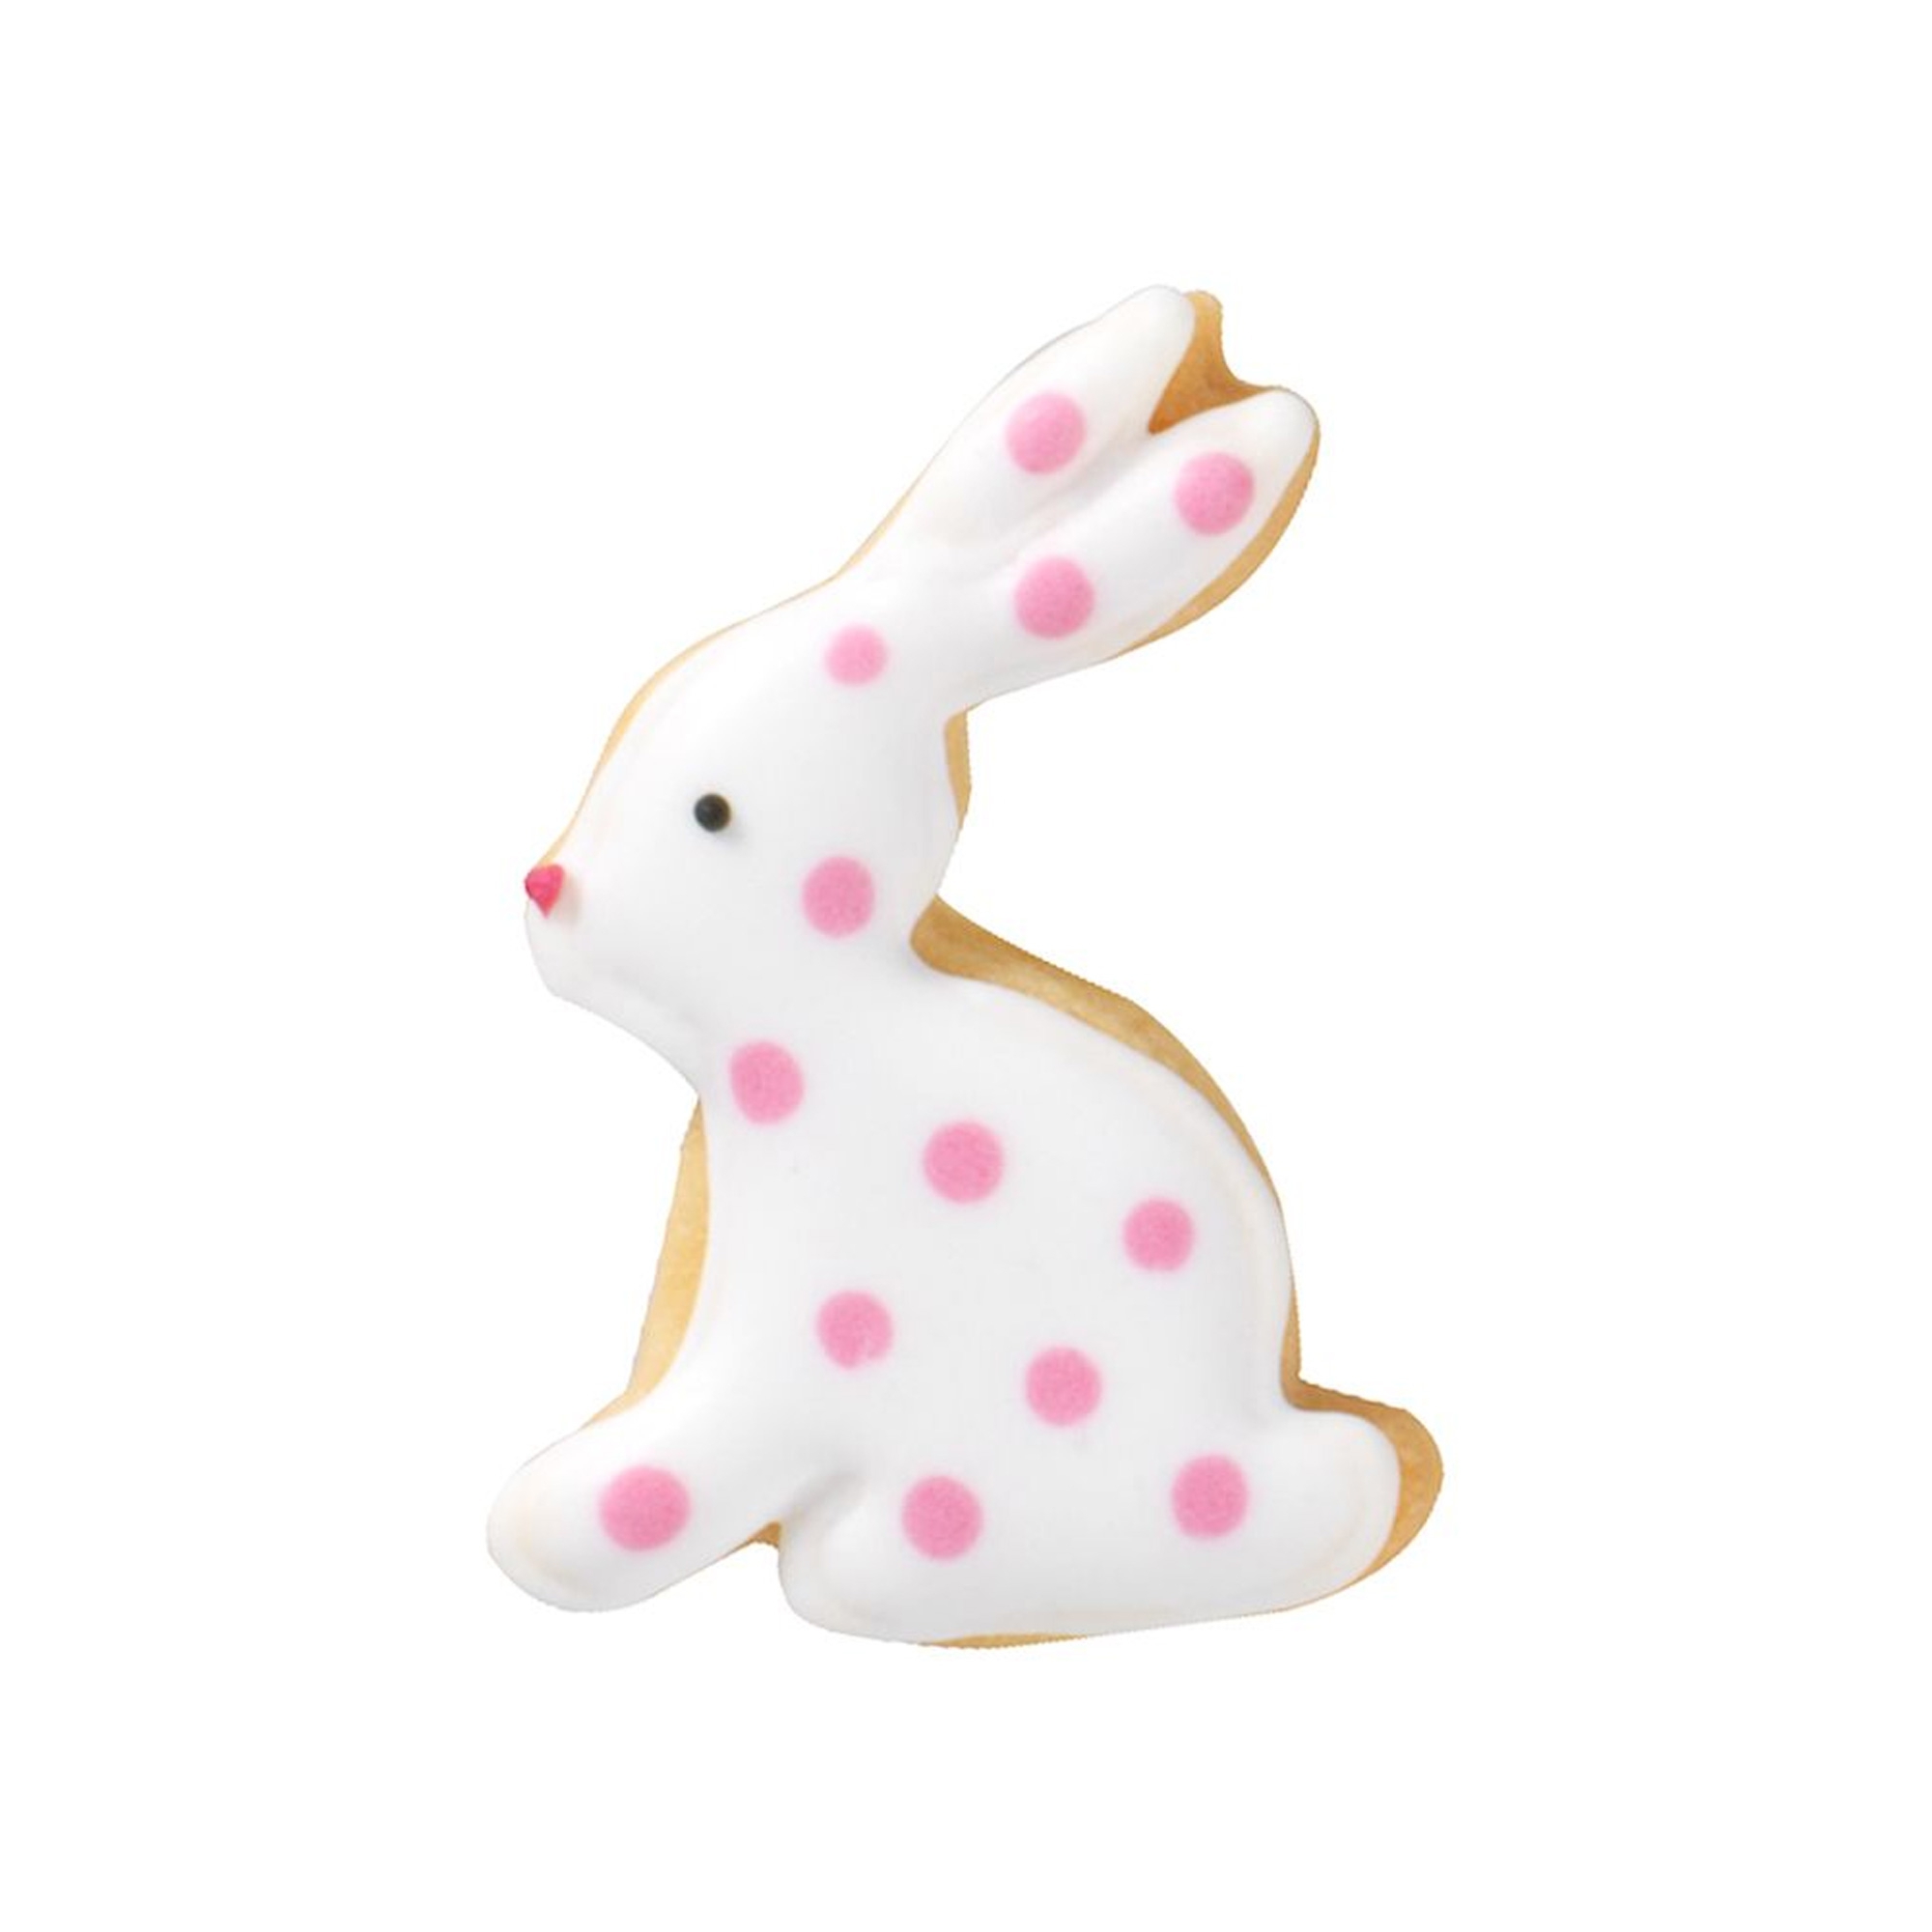 RBV Birkmann - Cookie cutter rabbit, sitting, 5 cm